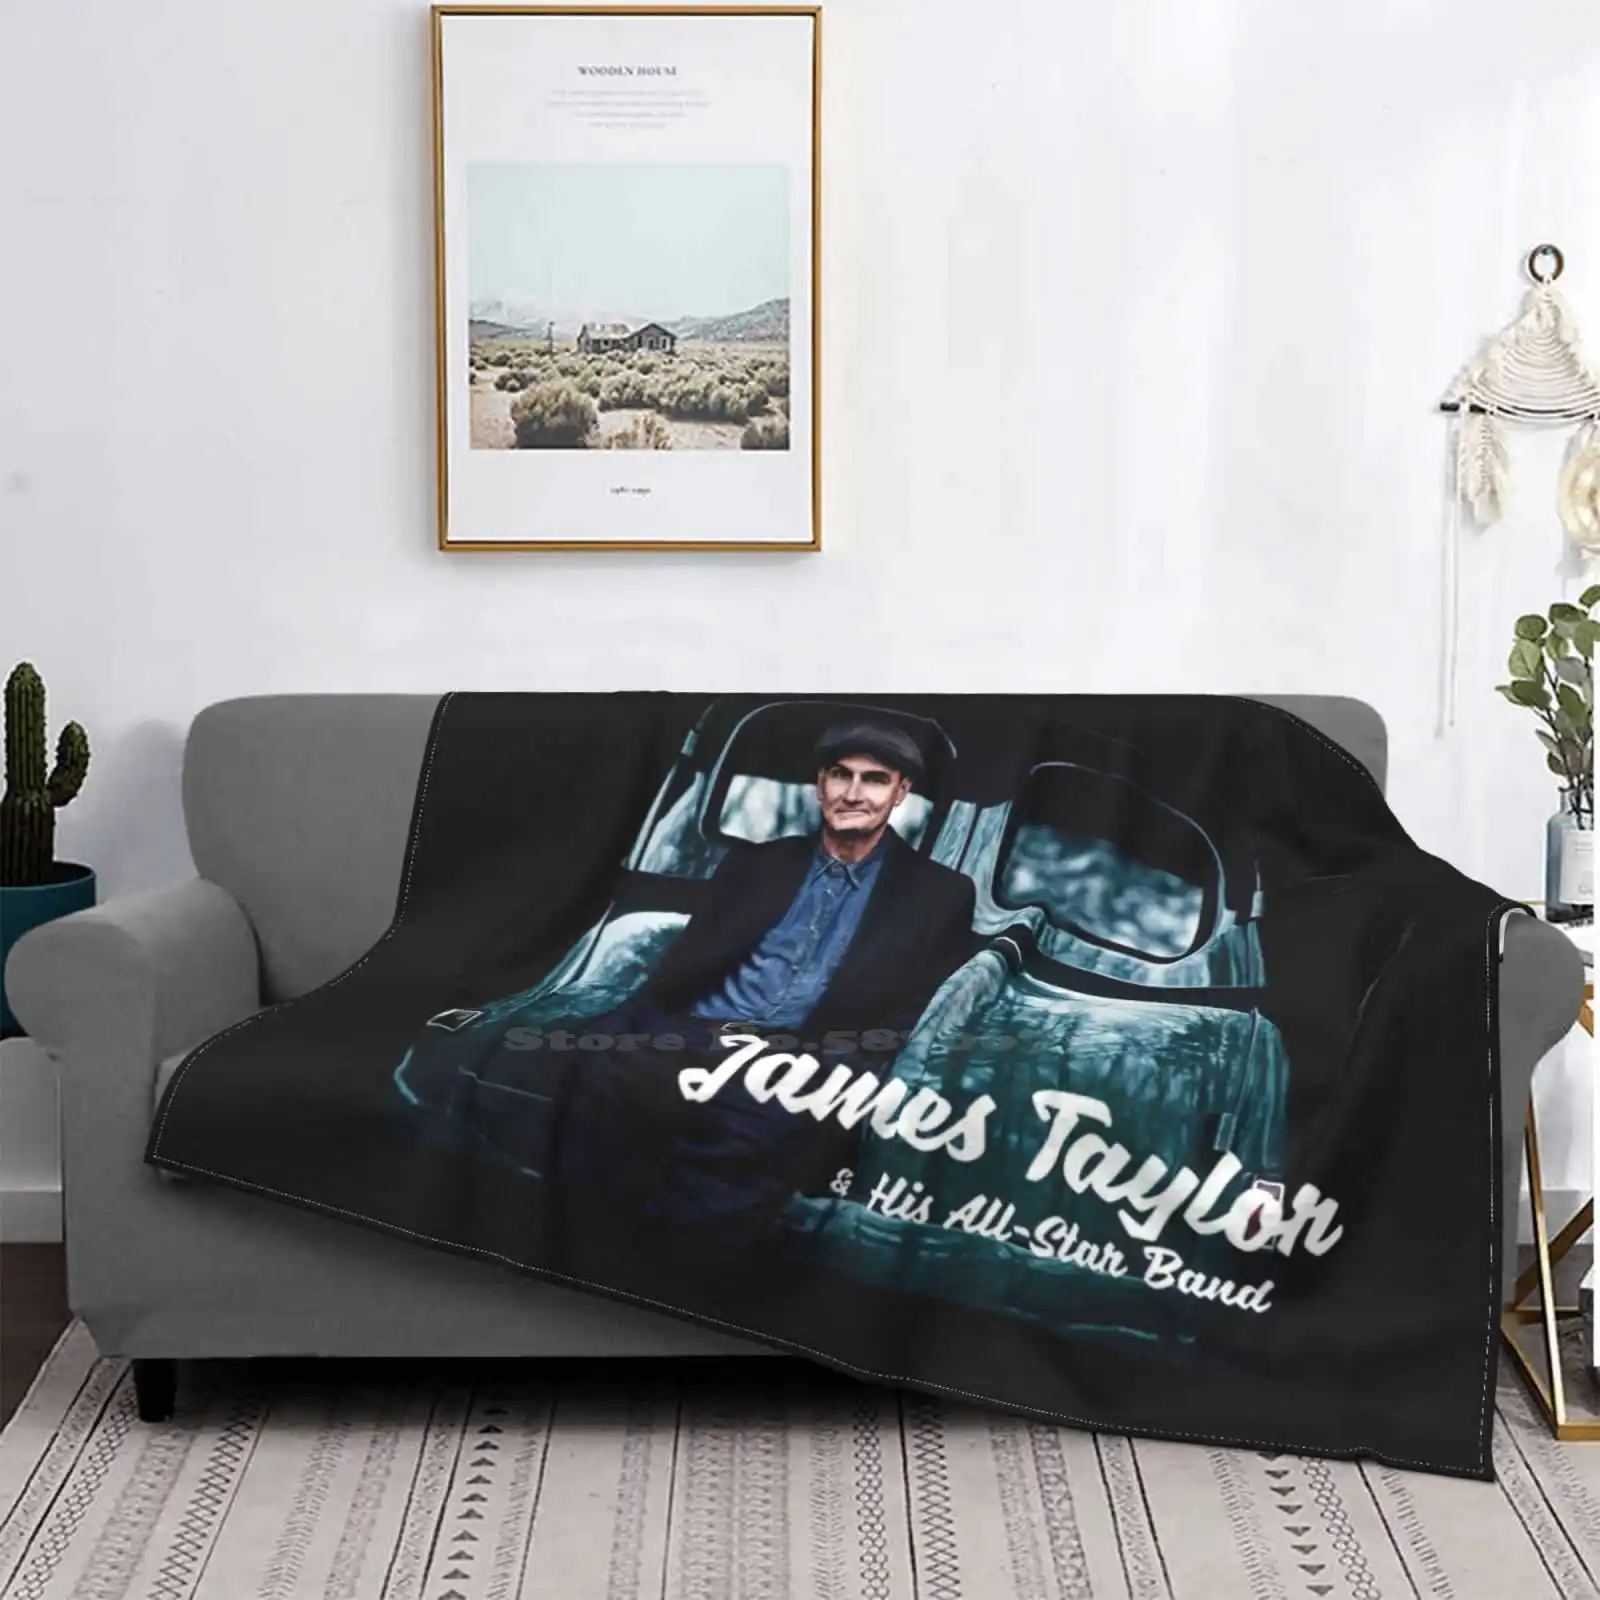 

Manta de cubierta suave para decoración del hogar, ropa de cama de James Taylor y su banda, todos los tamaños